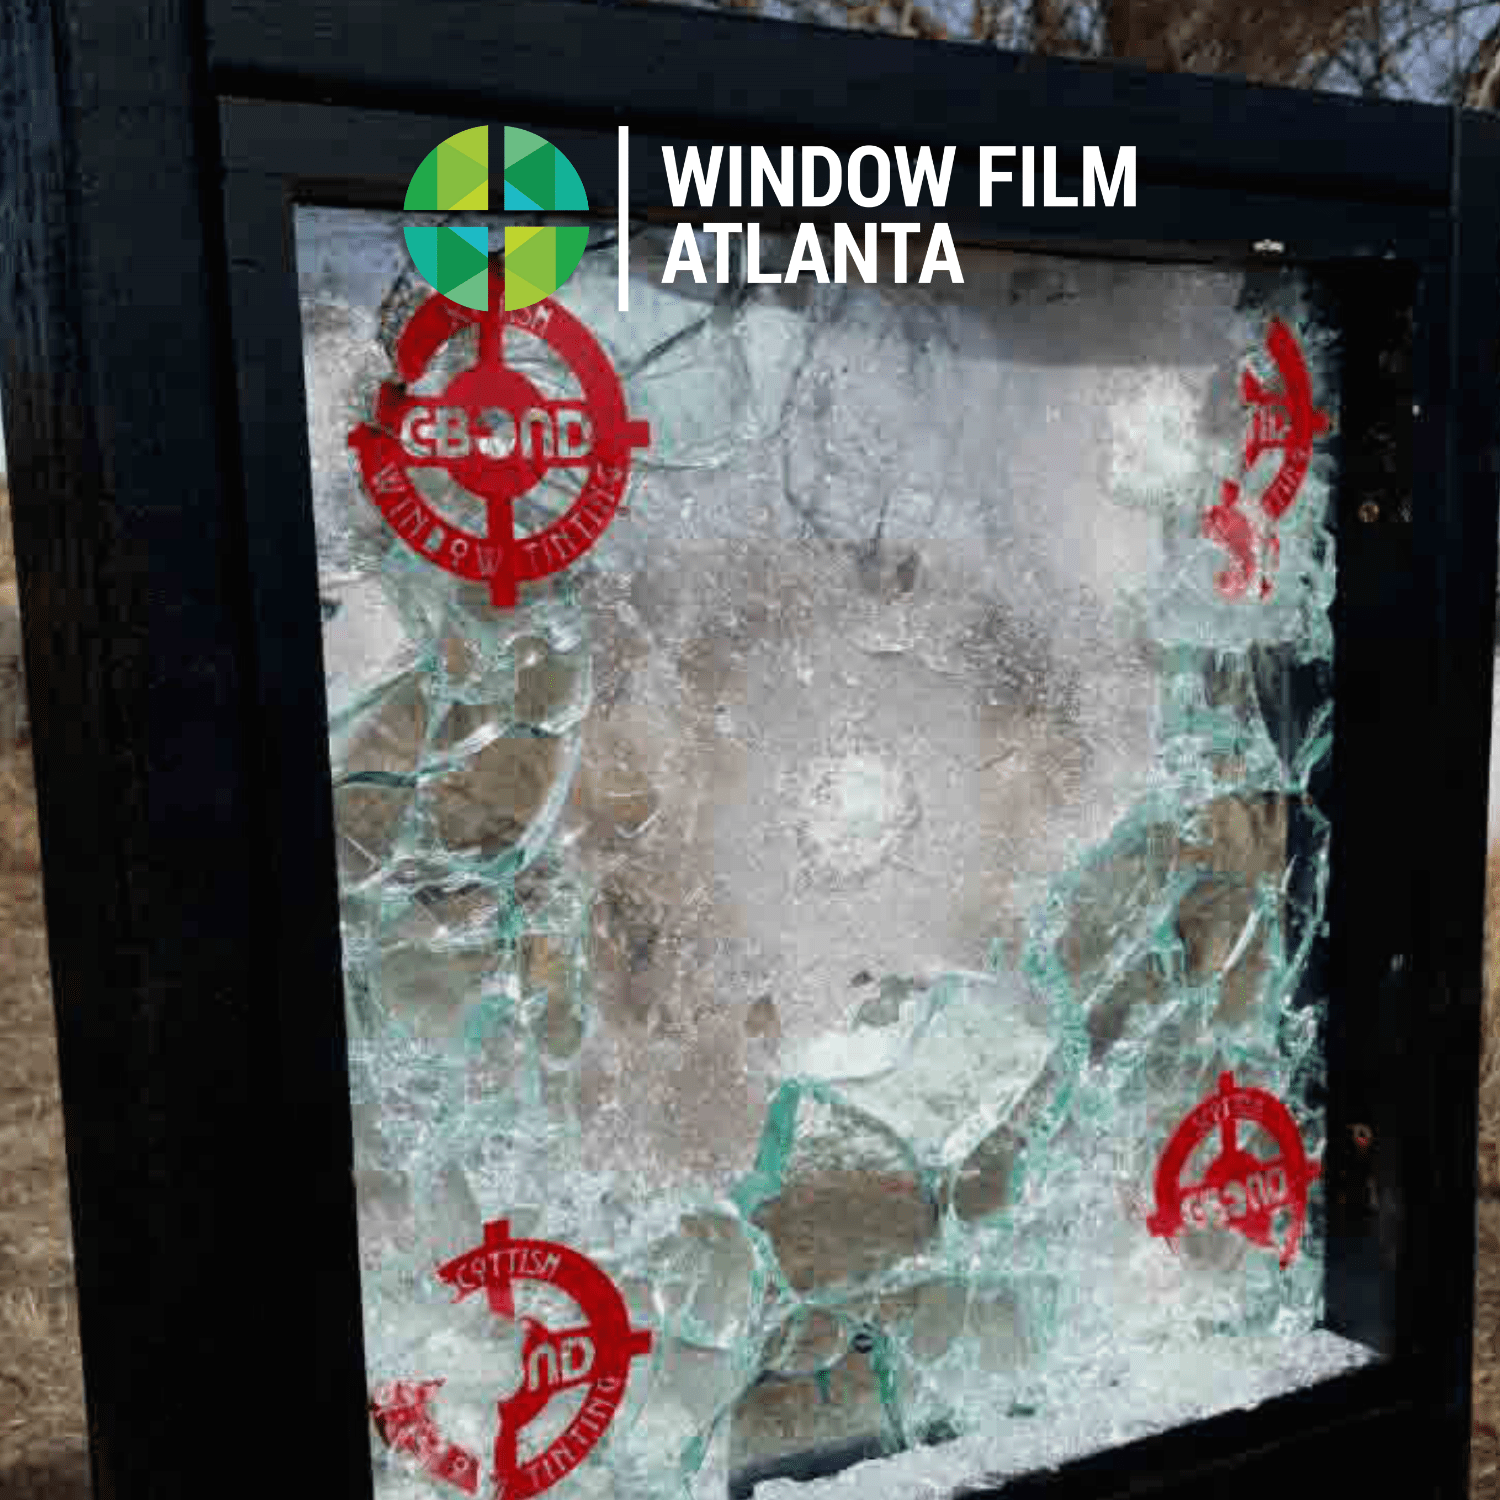 c-bond window film atlanta